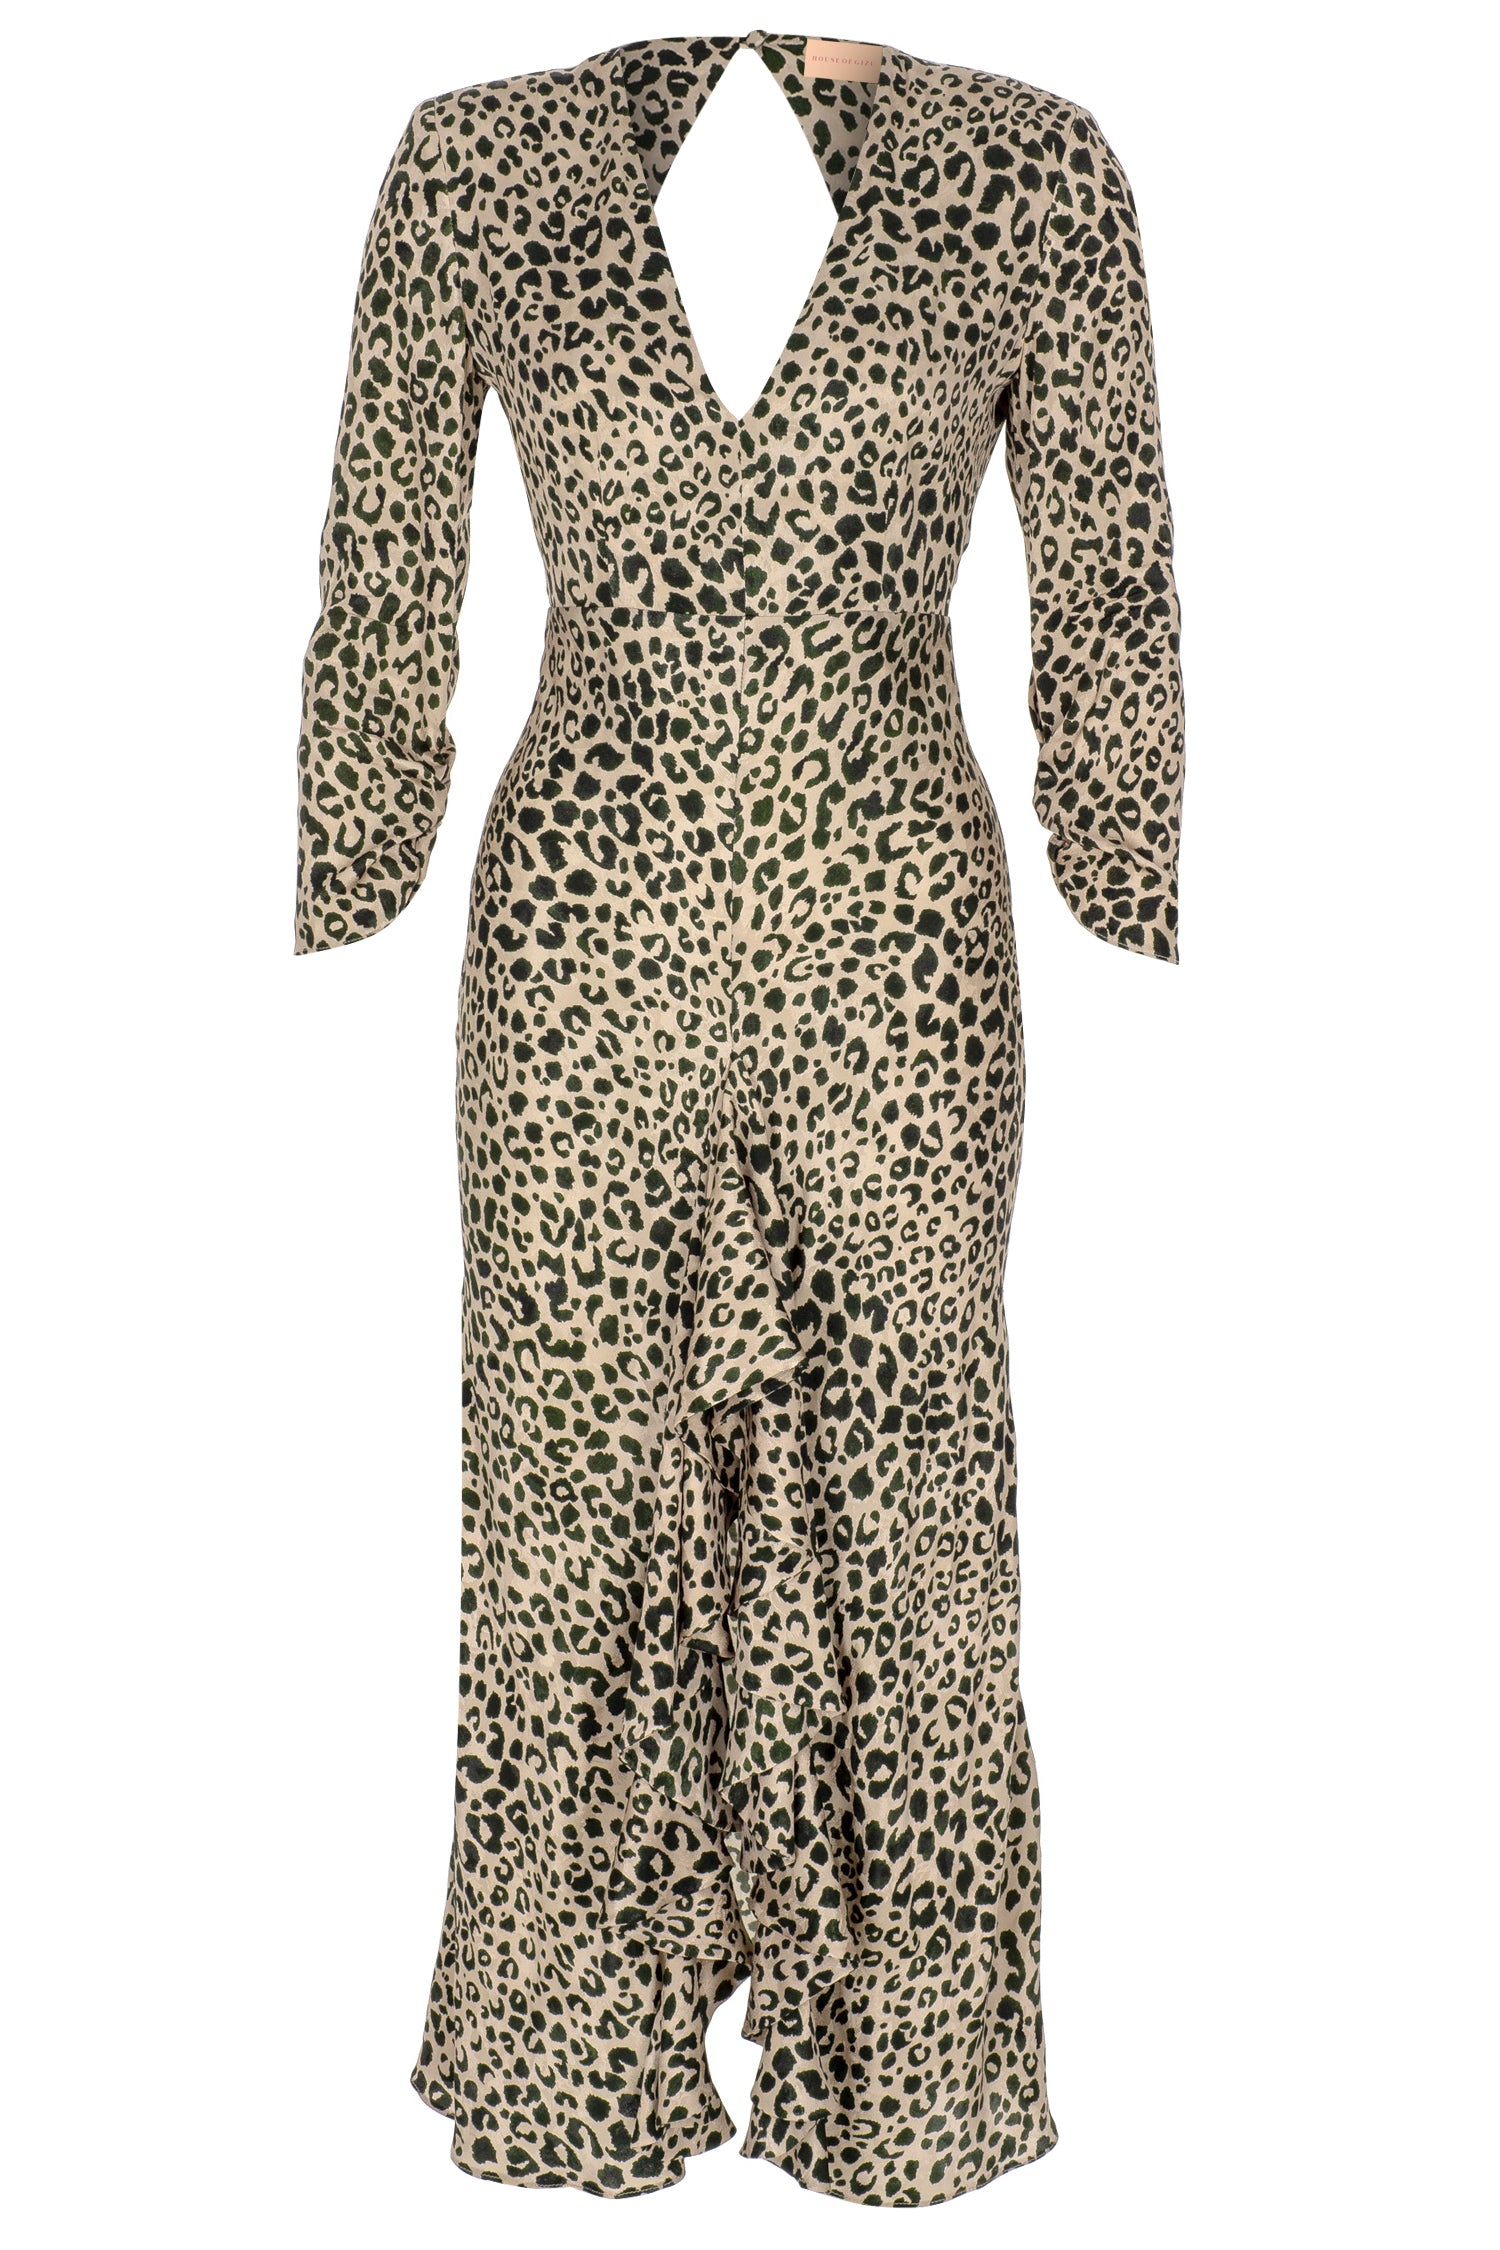 Roma Dress in Leopard